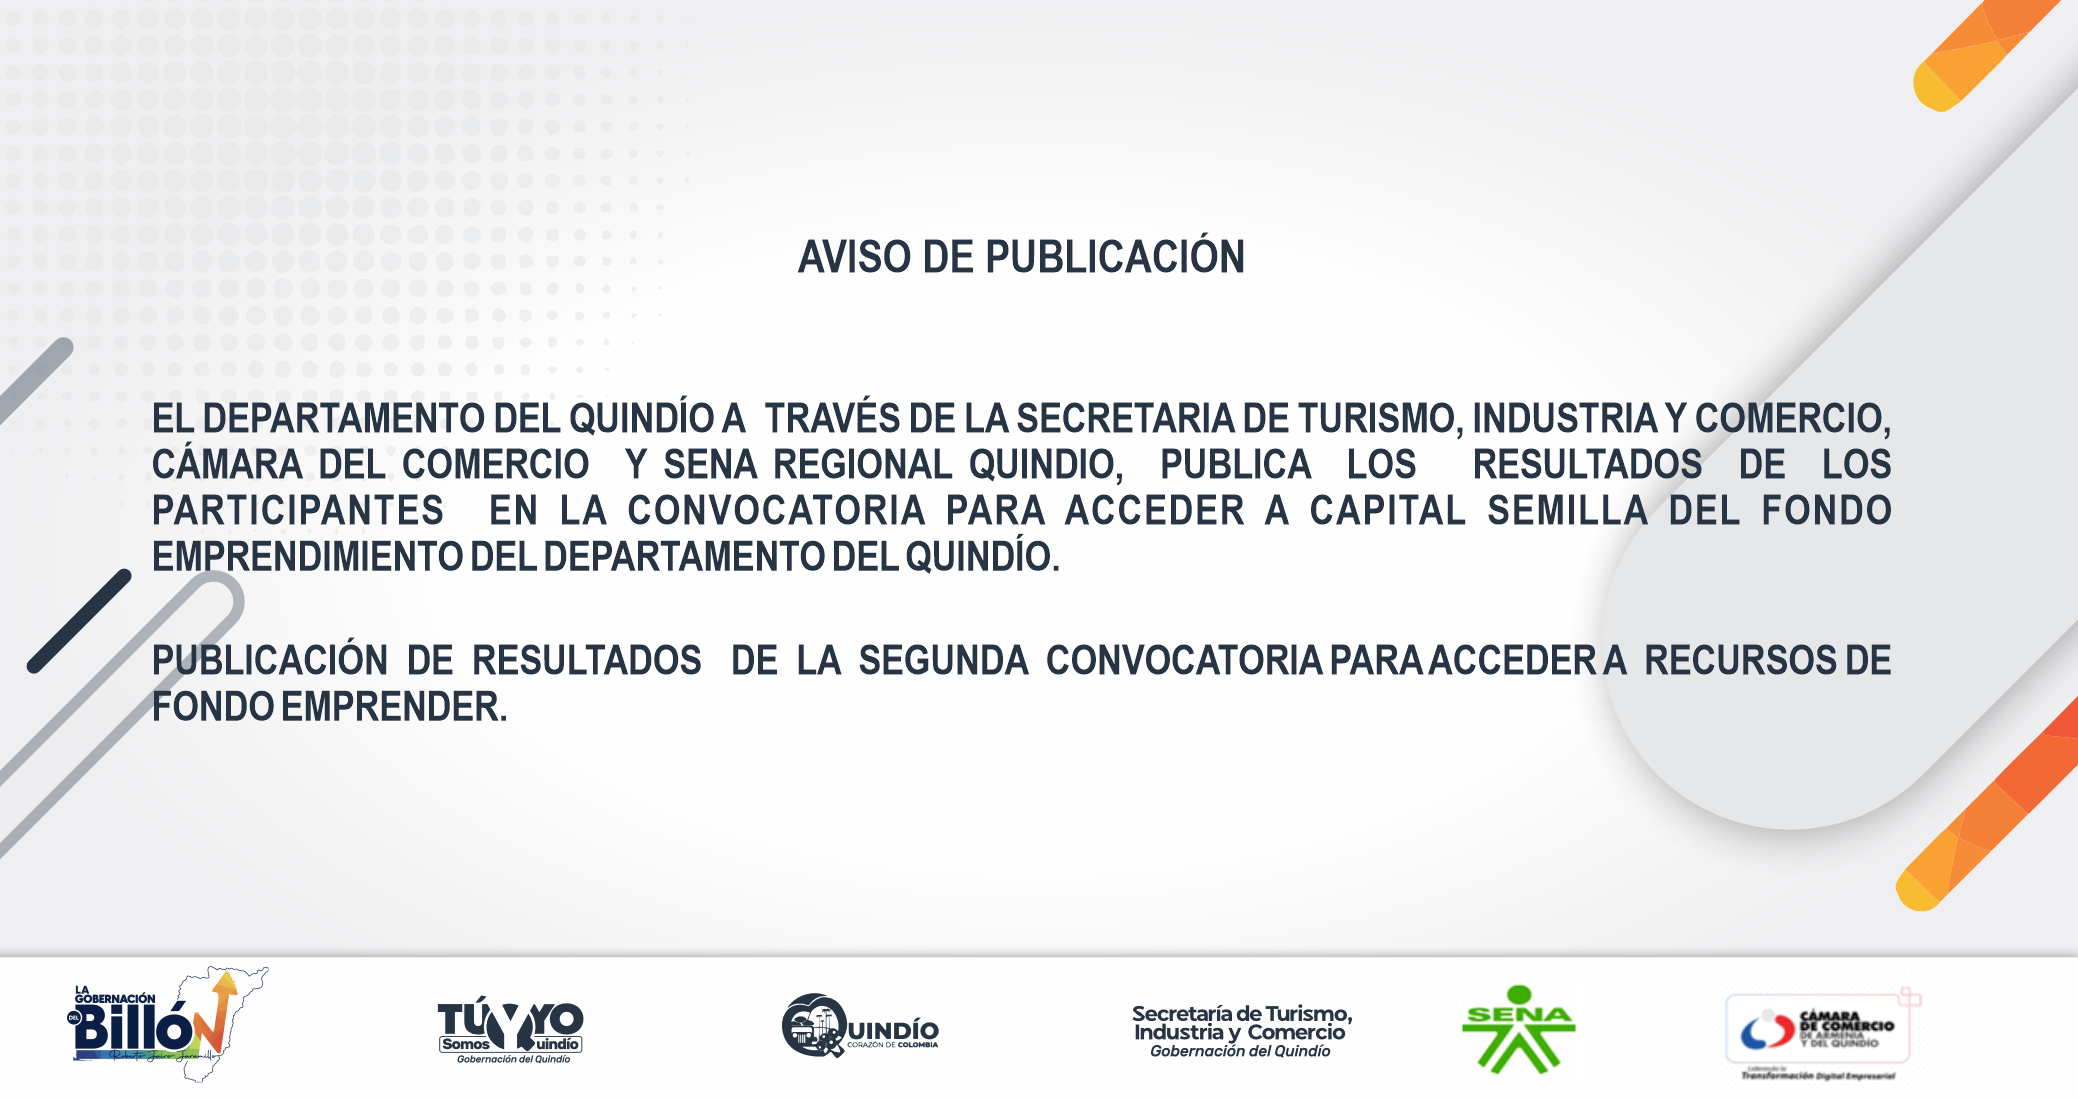 AVISO_DE_PUBLICACION_SEGUNDA_CONVOCATORIA.png - 413.93 kB